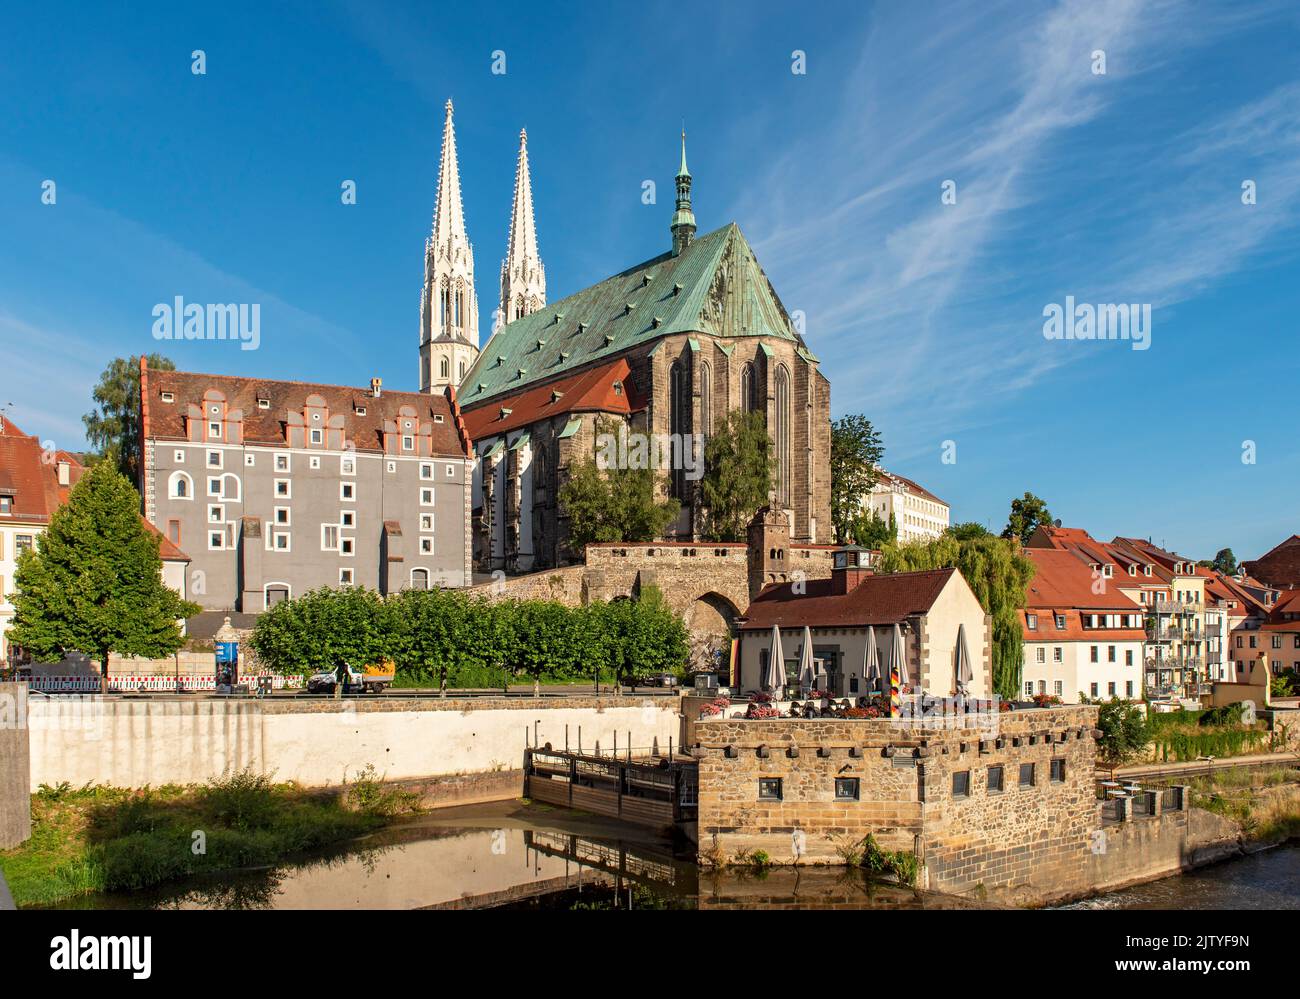 Iglesia de San Pedro y San Pablo (Peterskirche) y la Casa de las Maderas (Waidhaus), Görlitz (Goerlitz), Alemania Foto de stock